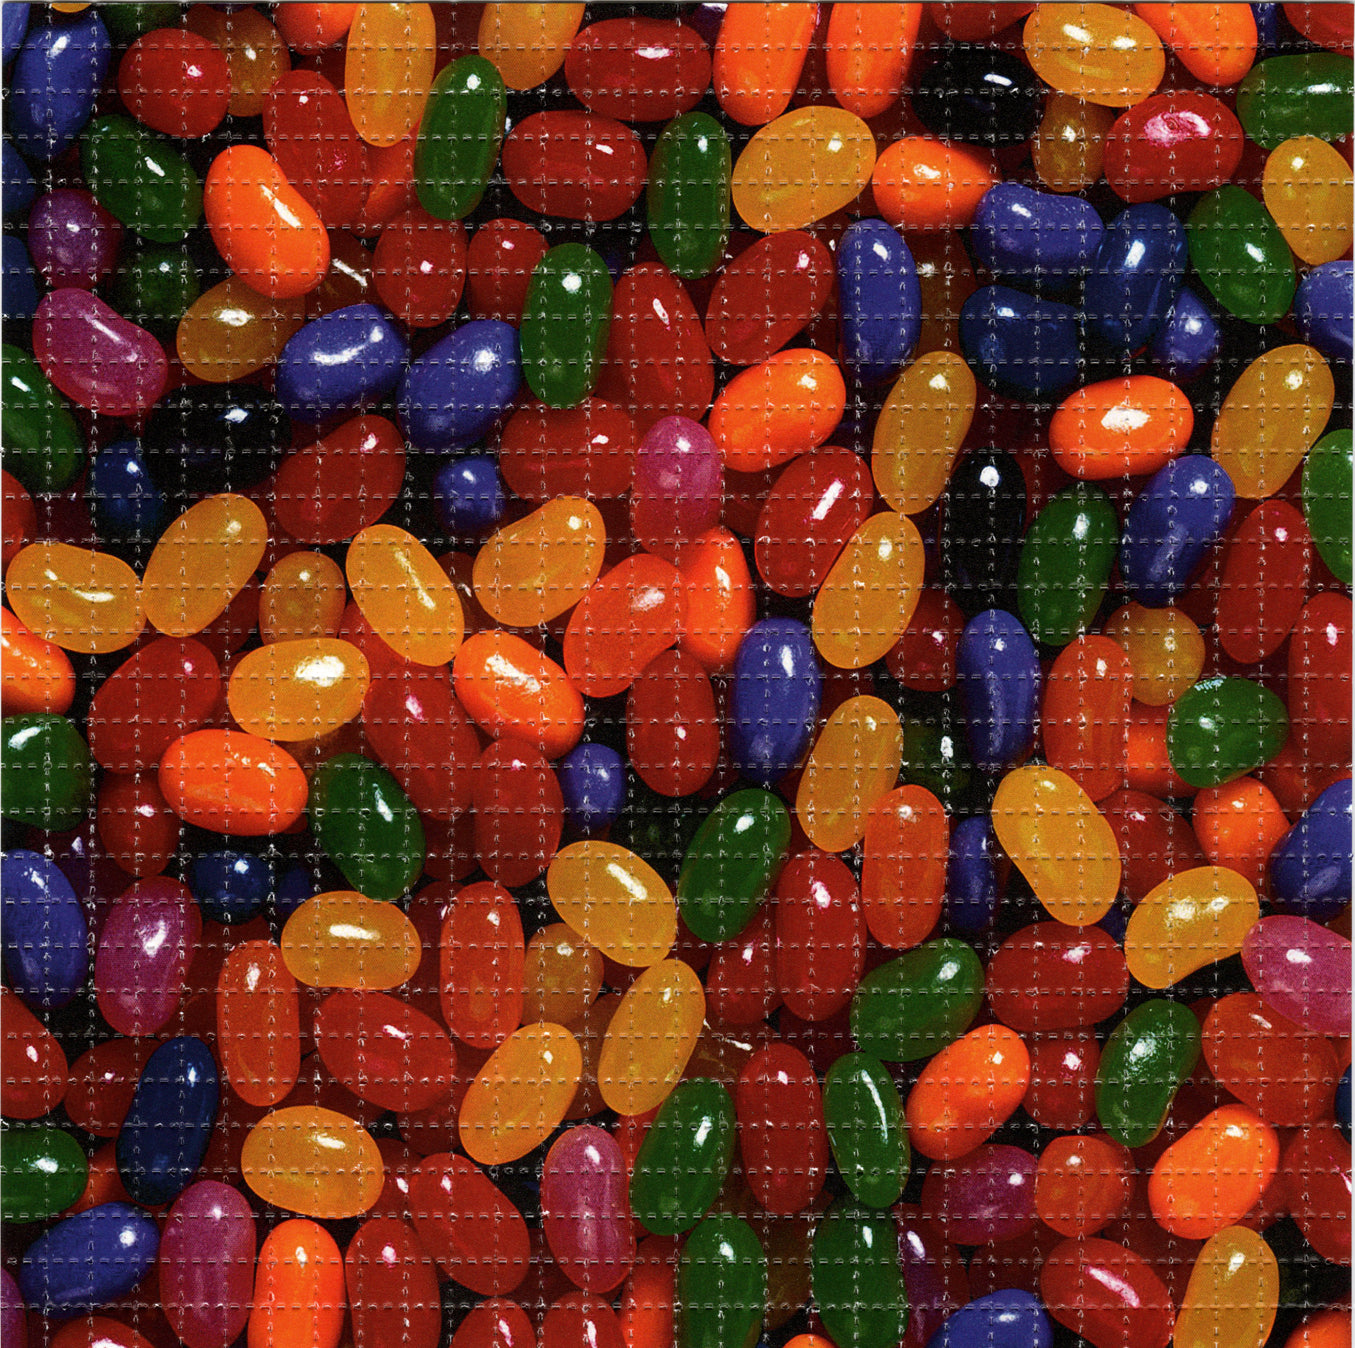 Jelly Beans LSD blotter art print